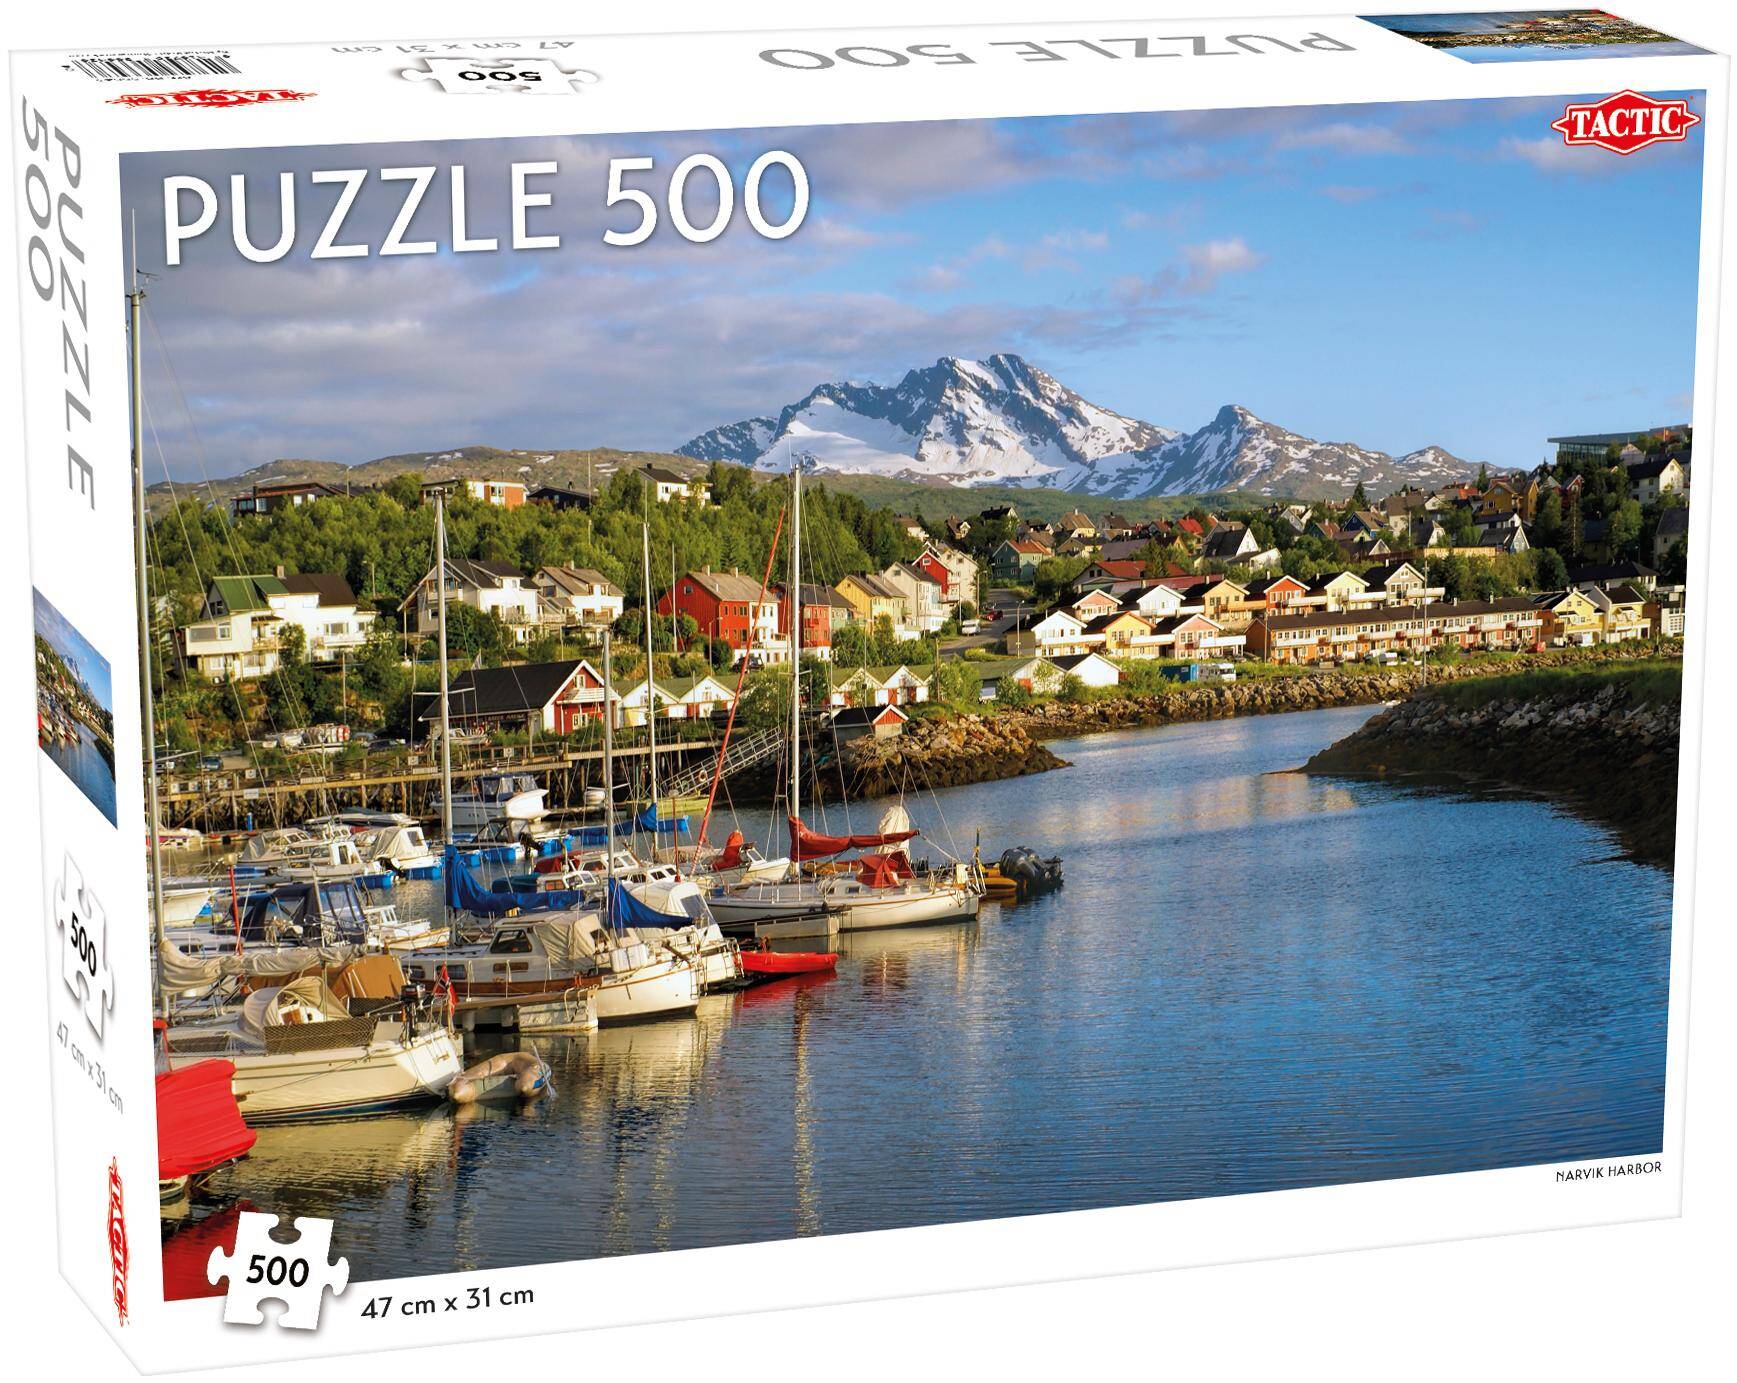 Puzzle 500 Around the World Northern Stars Narvik Harbor